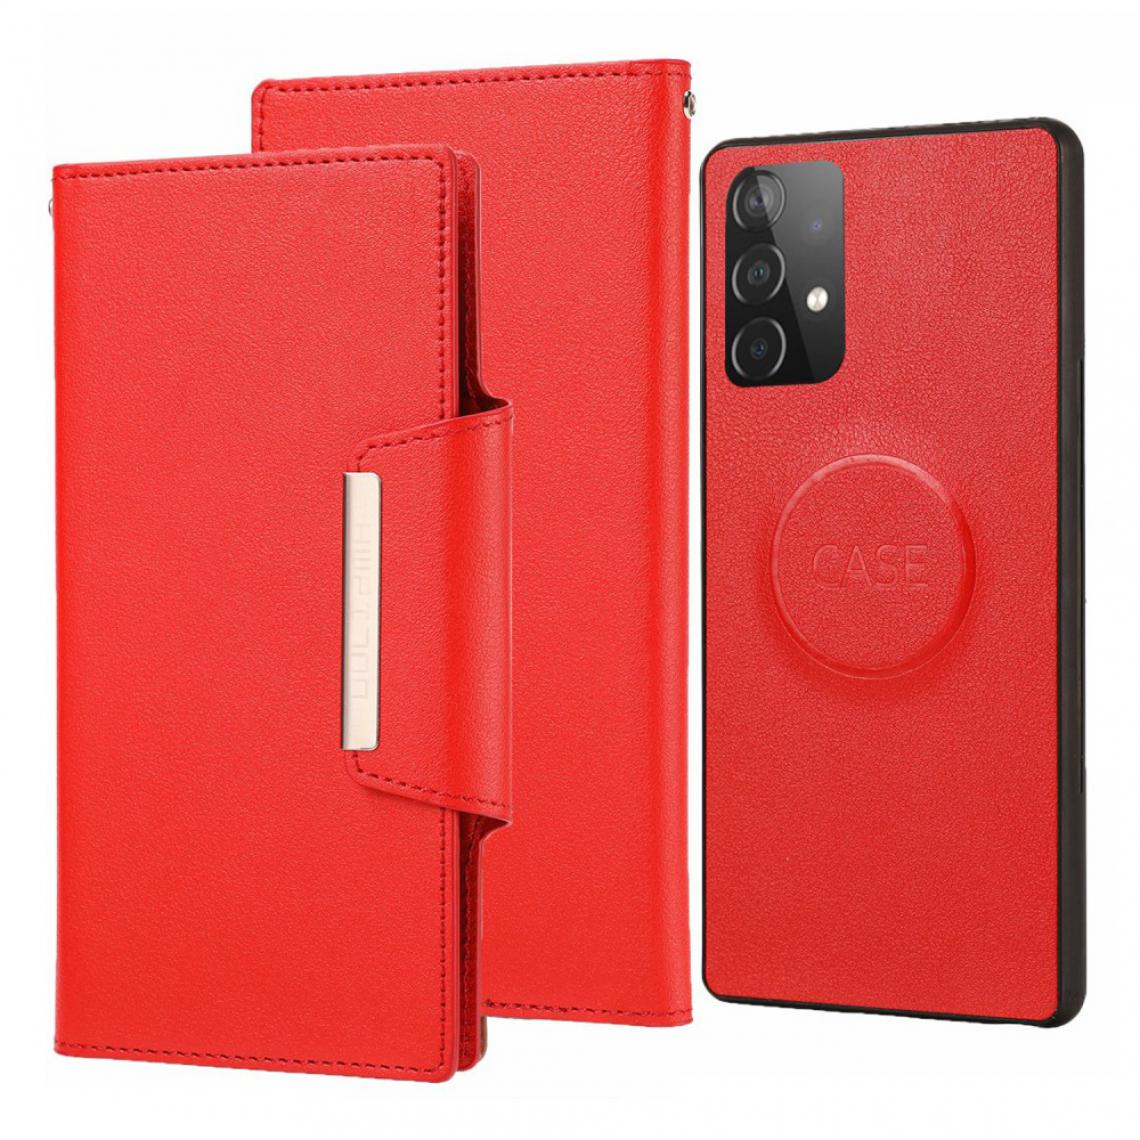 Other - Coque en TPU + PU avec intérieur amovible rouge pour votre Samsung Galaxy A52 5G/4G - Coque, étui smartphone